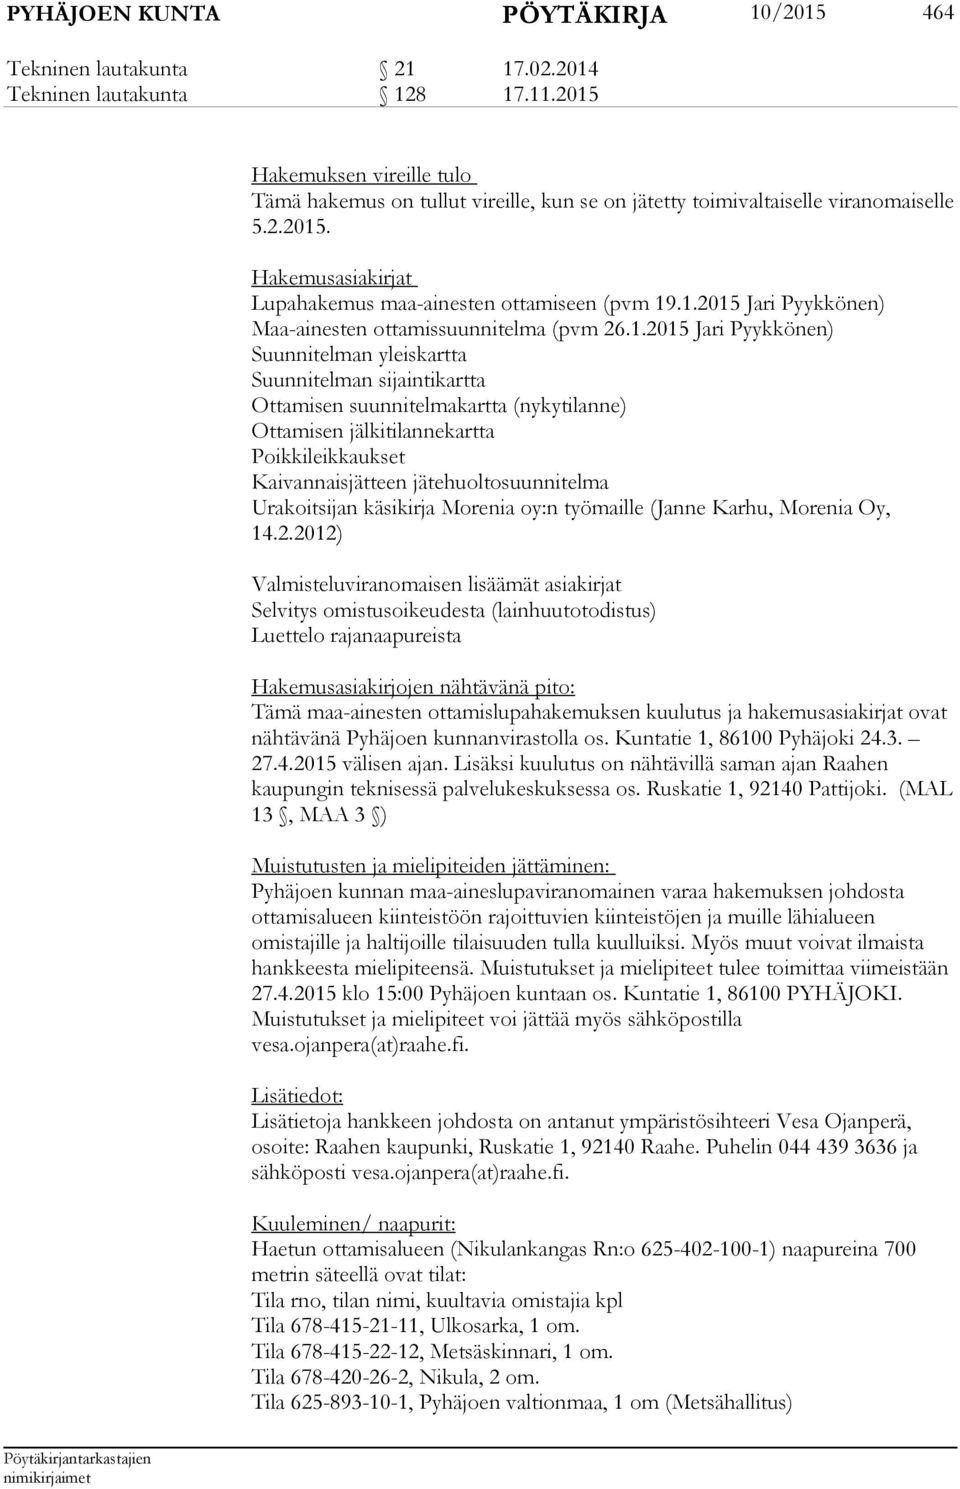 1.2015 Jari Pyykkönen) Suunnitelman yleiskartta Suunnitelman sijaintikartta Ottamisen suunnitelmakartta (nykytilanne) Ottamisen jälkitilannekartta Poikkileikkaukset Kaivannaisjätteen